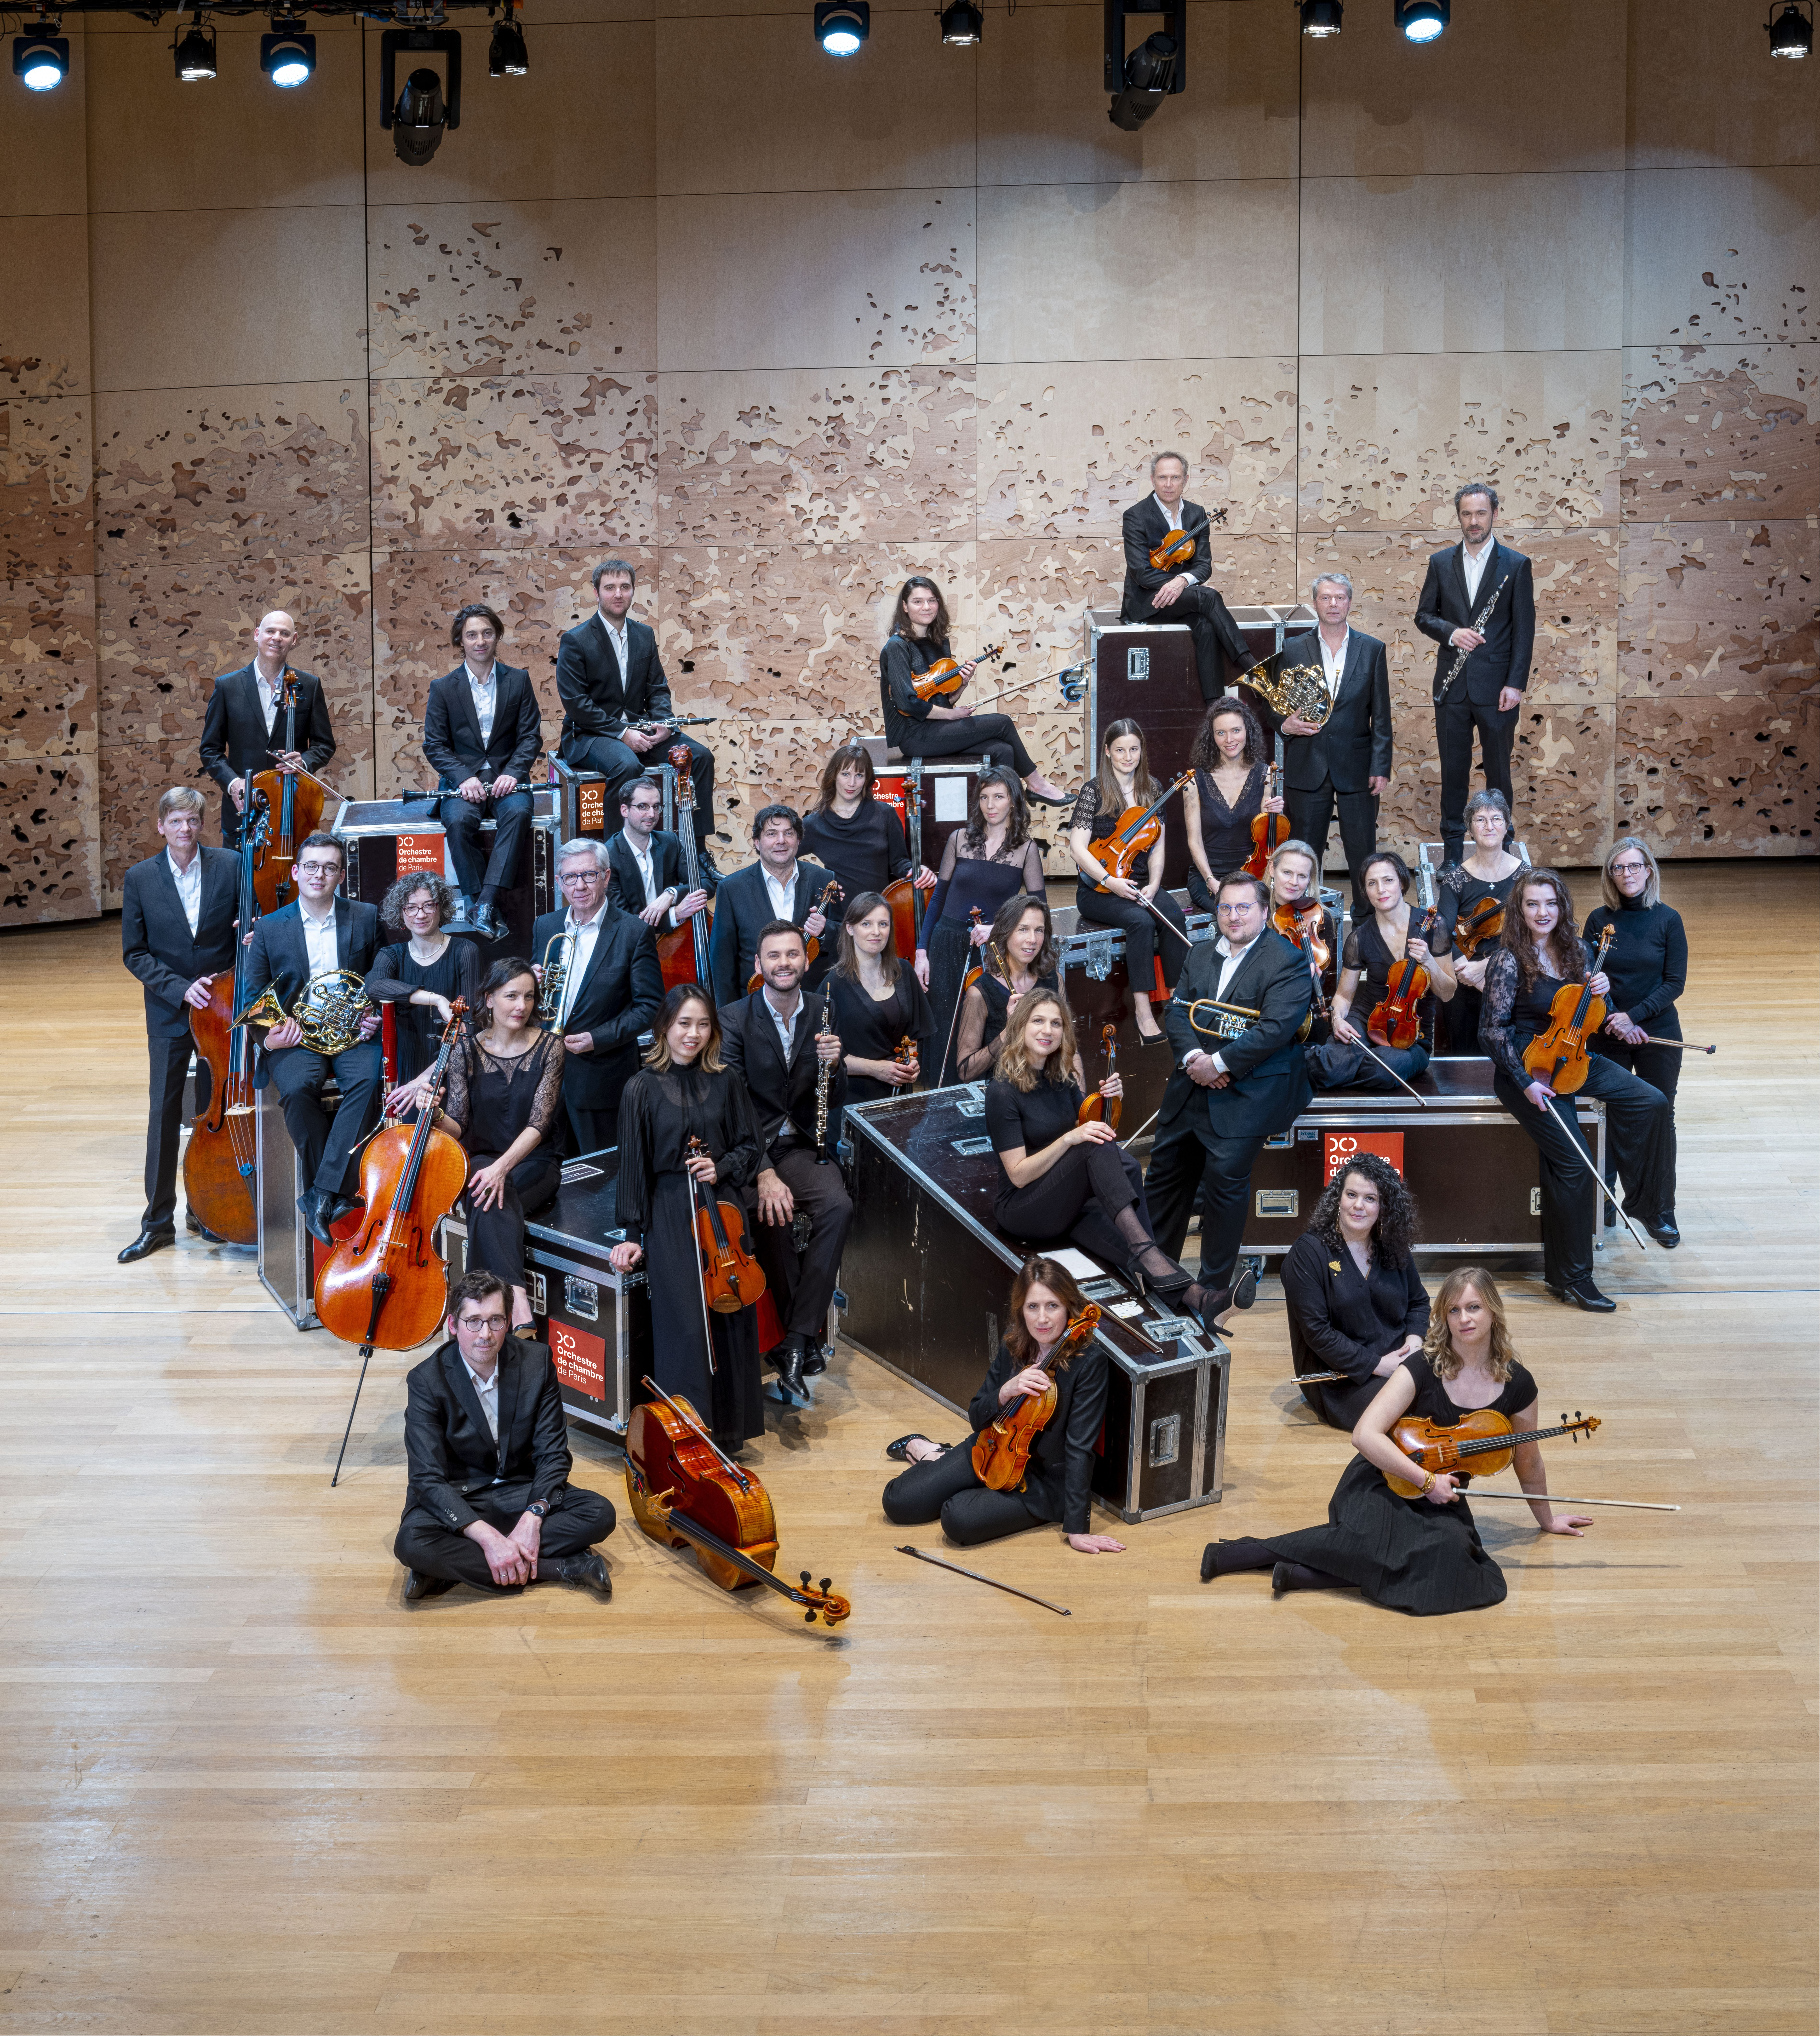 Orchestre de chambre de Paris